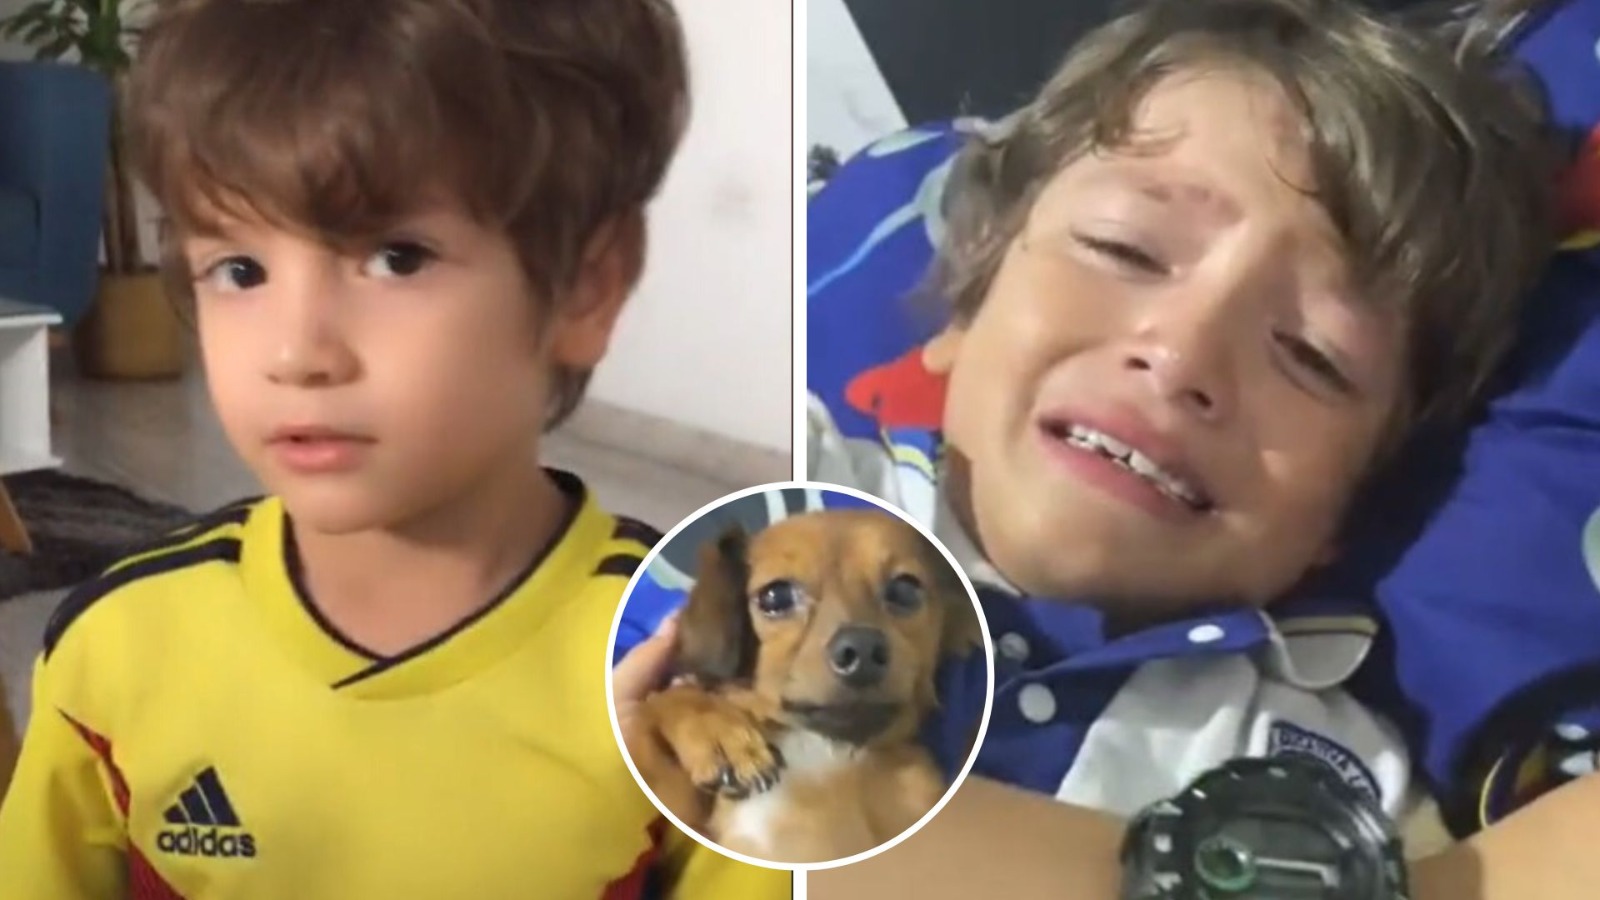 “El mejor día de mi vida”: Regalan perrito a niño y hace llorar al Internet con su reacción